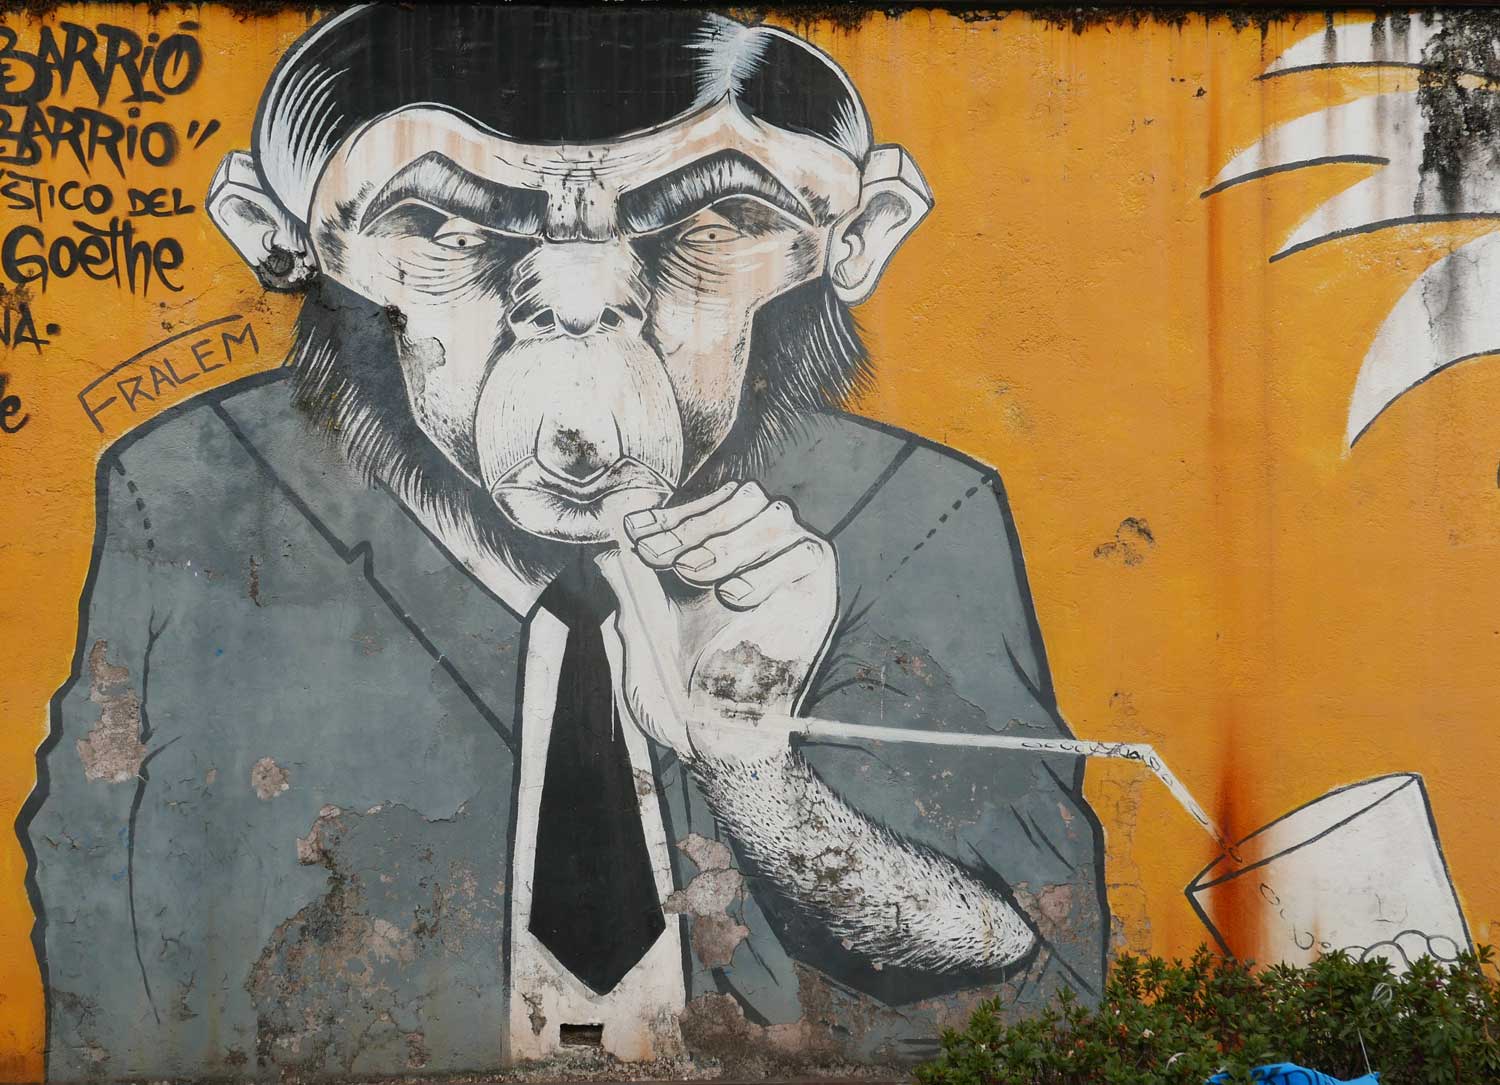 Professor Monkey. Street art in San Jose, Costa Rica